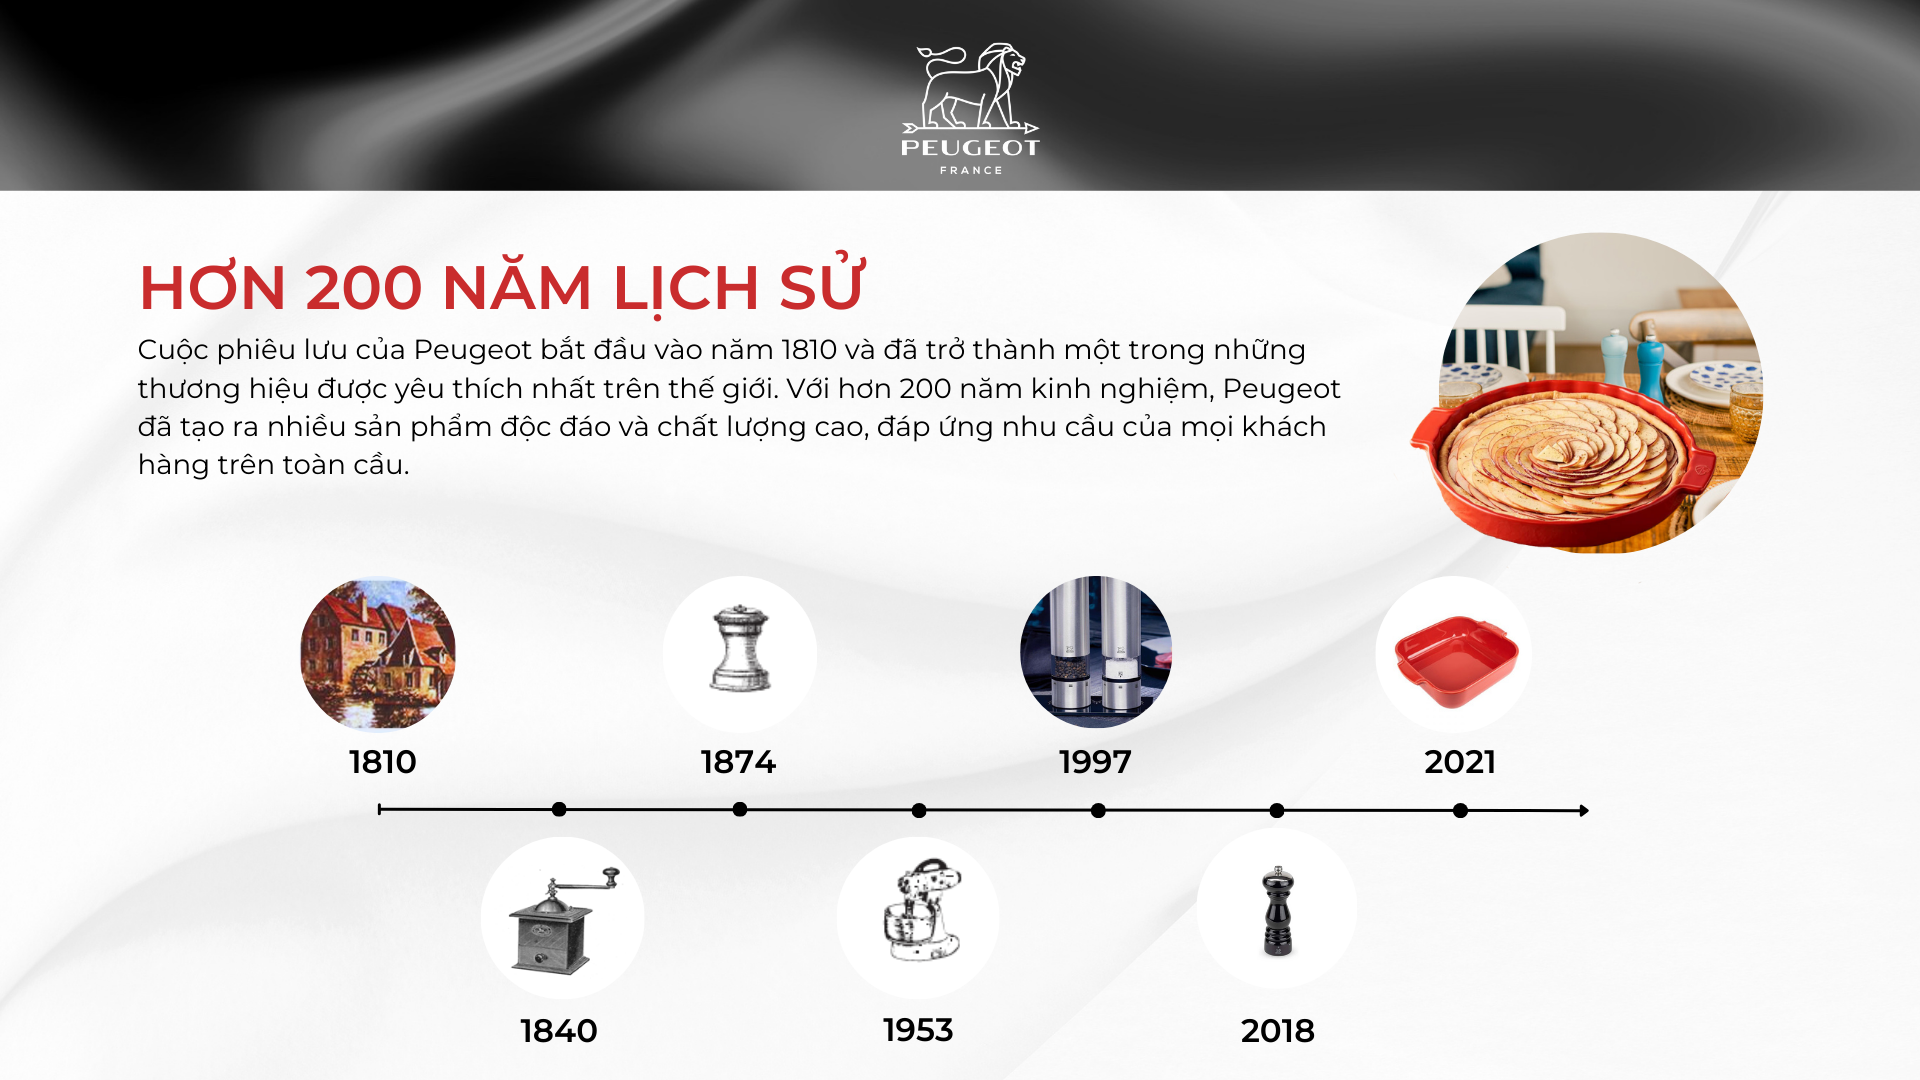 Lịch sử hình thành Peugeot